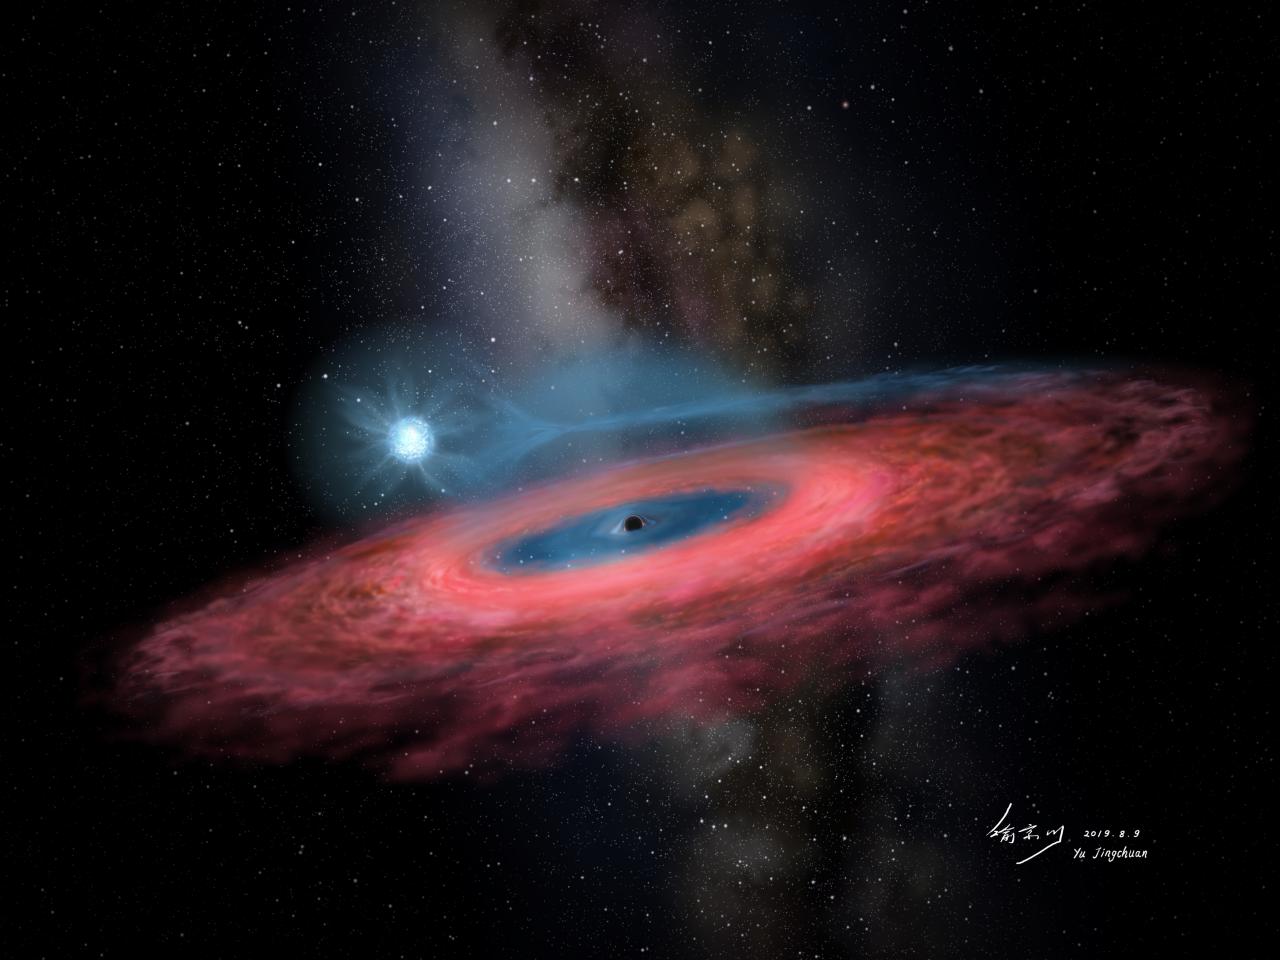 Recreación artística del agujero negro estelar LB-1 con una estrella orbitando a su alrededor. Crédito: Jingchuan Yu.